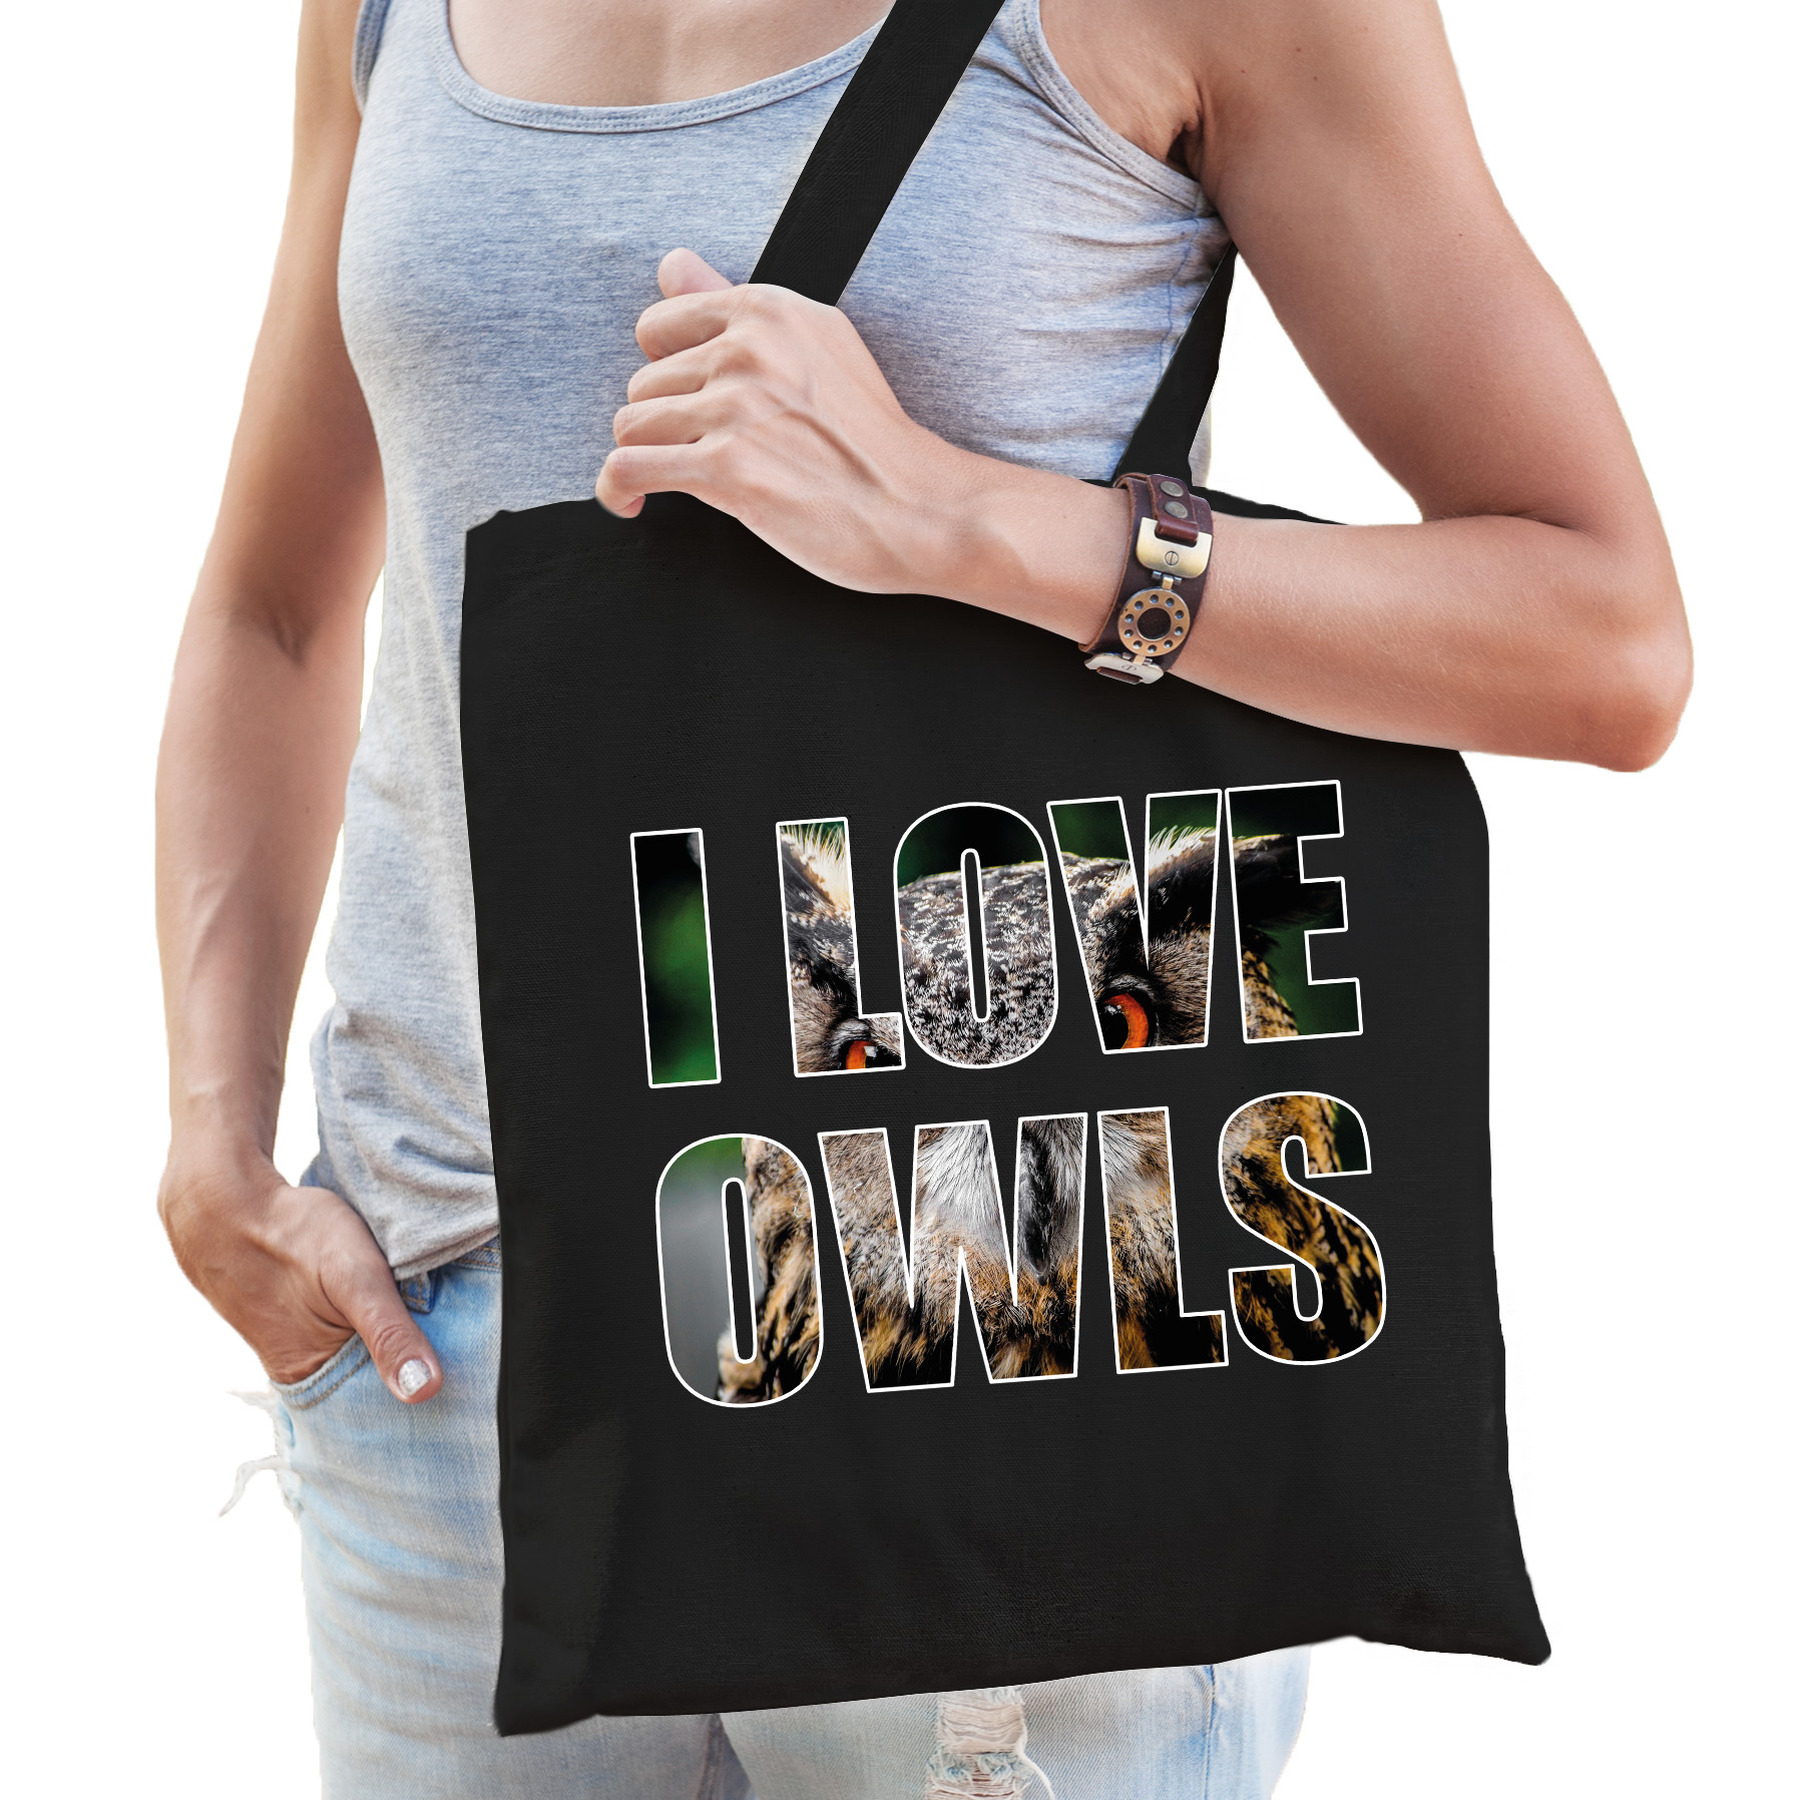 I love owls / Oehoe uilen katoenen tasje zwart dames